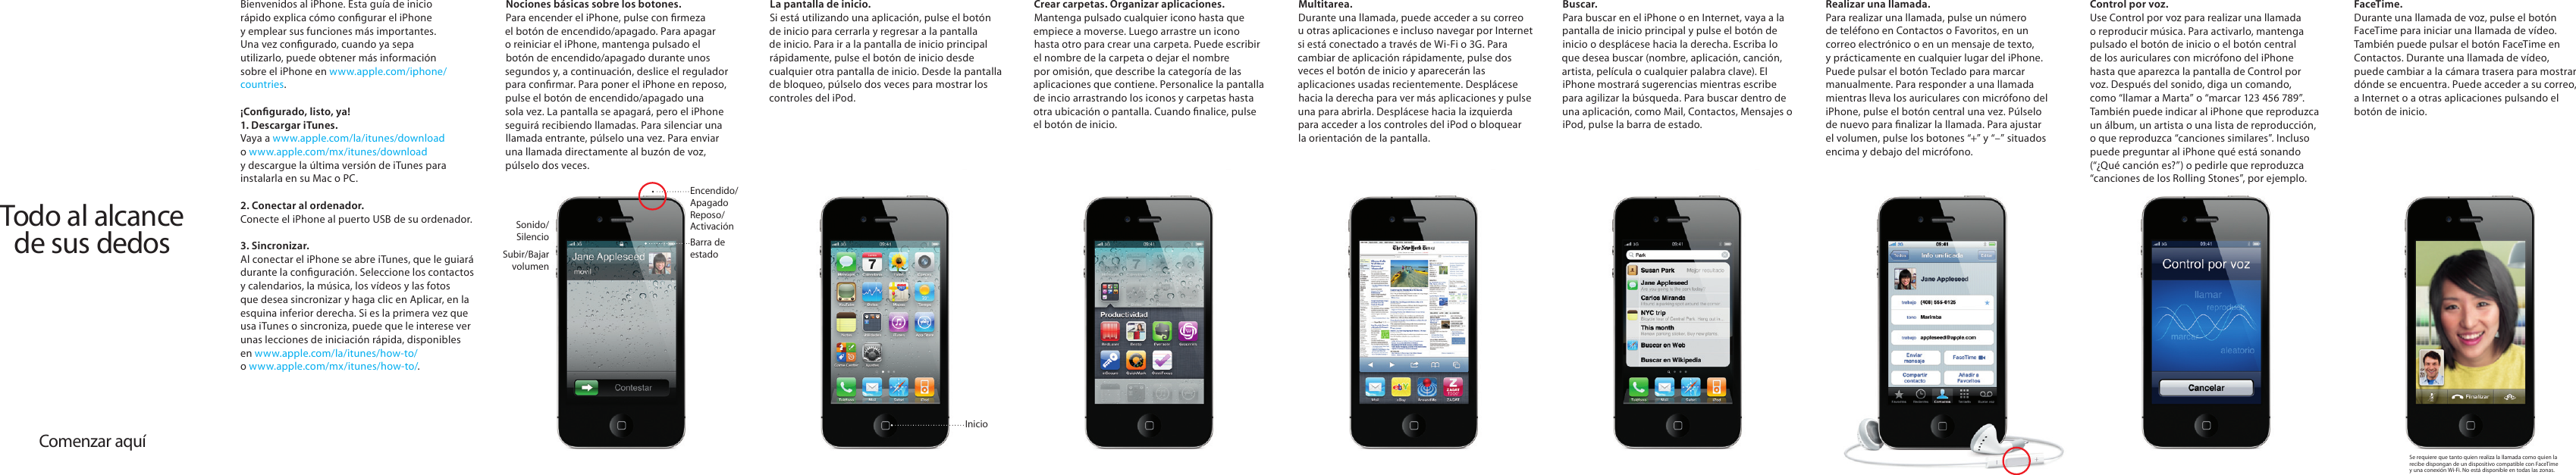 Page 1 of 2 - Apple IPhone4 User Manual I Phone4-Todoalalcancedesusdedos Phone 4 Todo Al Alcance De Sus Dedos